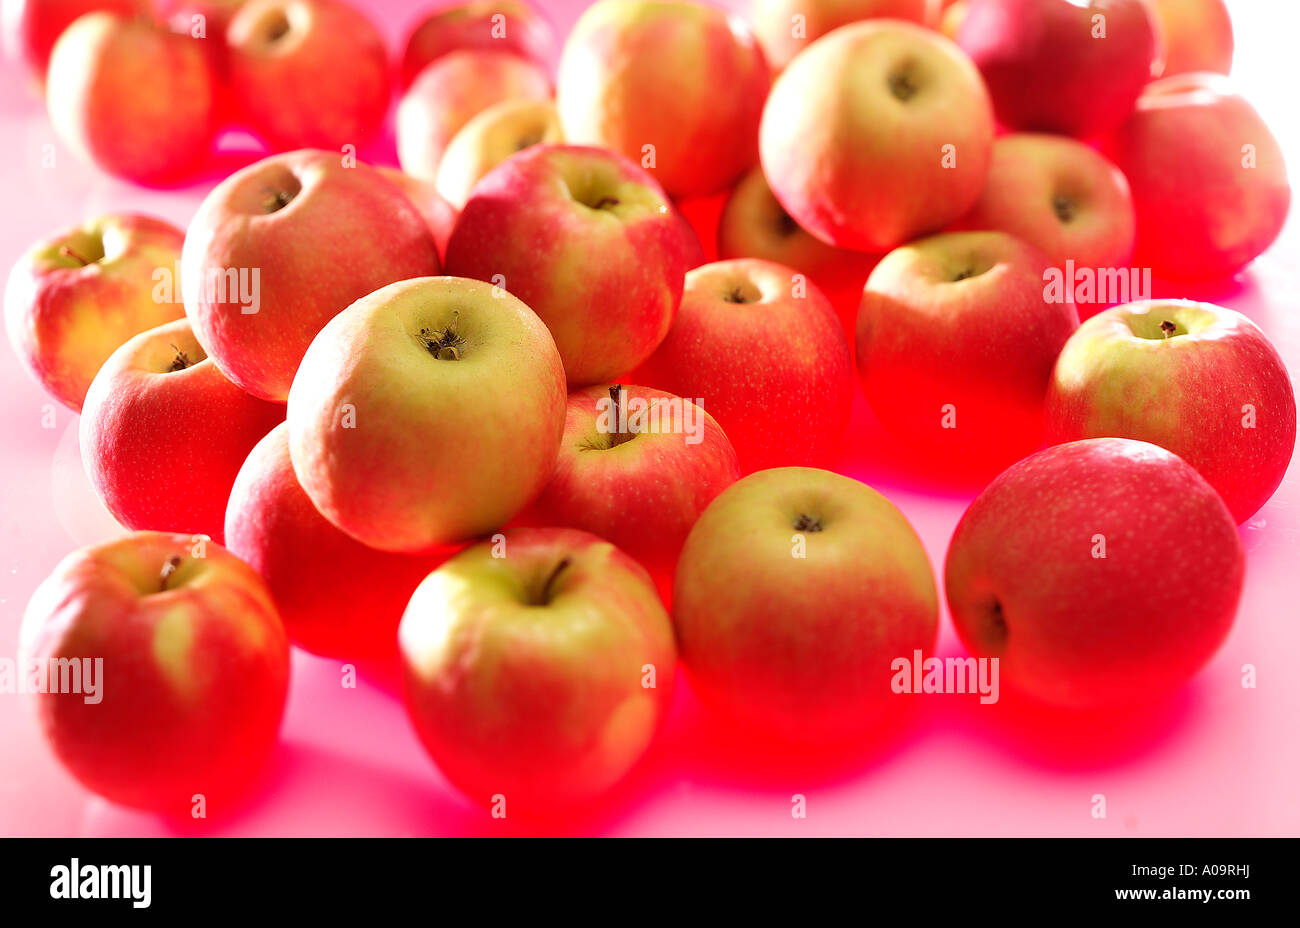 Aepfel, manzanas Foto de stock